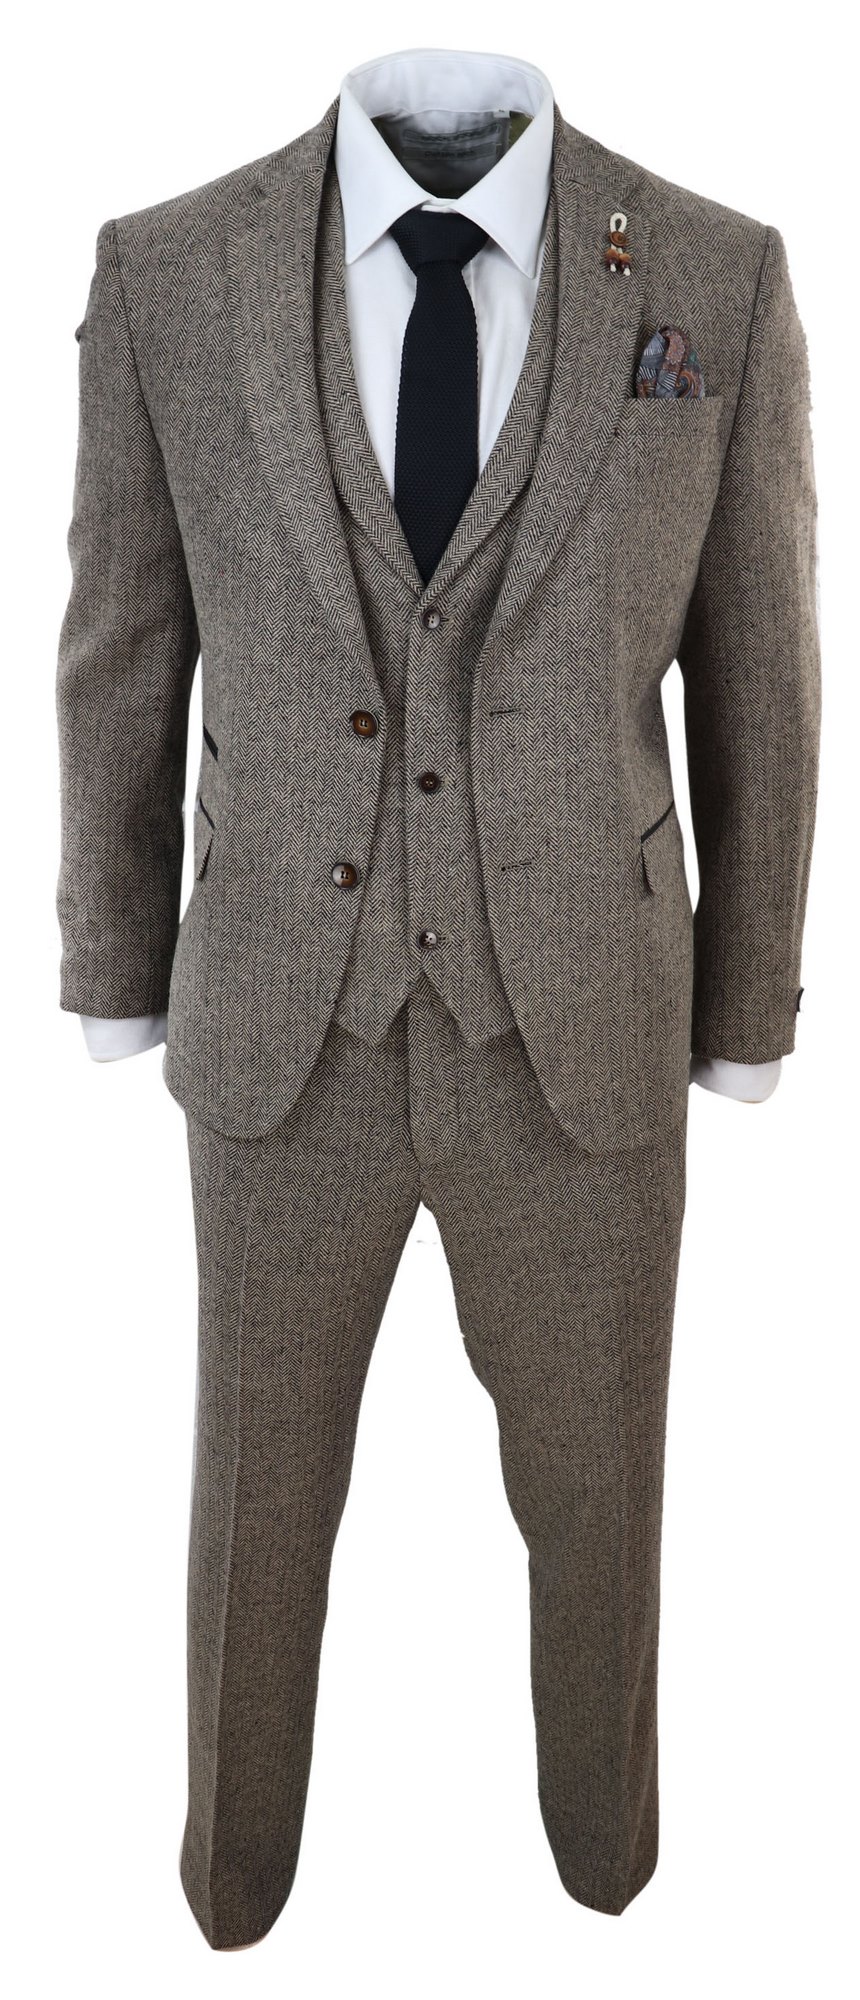 Oak-Brown Herringbone Tweed 3 Piece Suit: Buy Online - Happy Gentleman